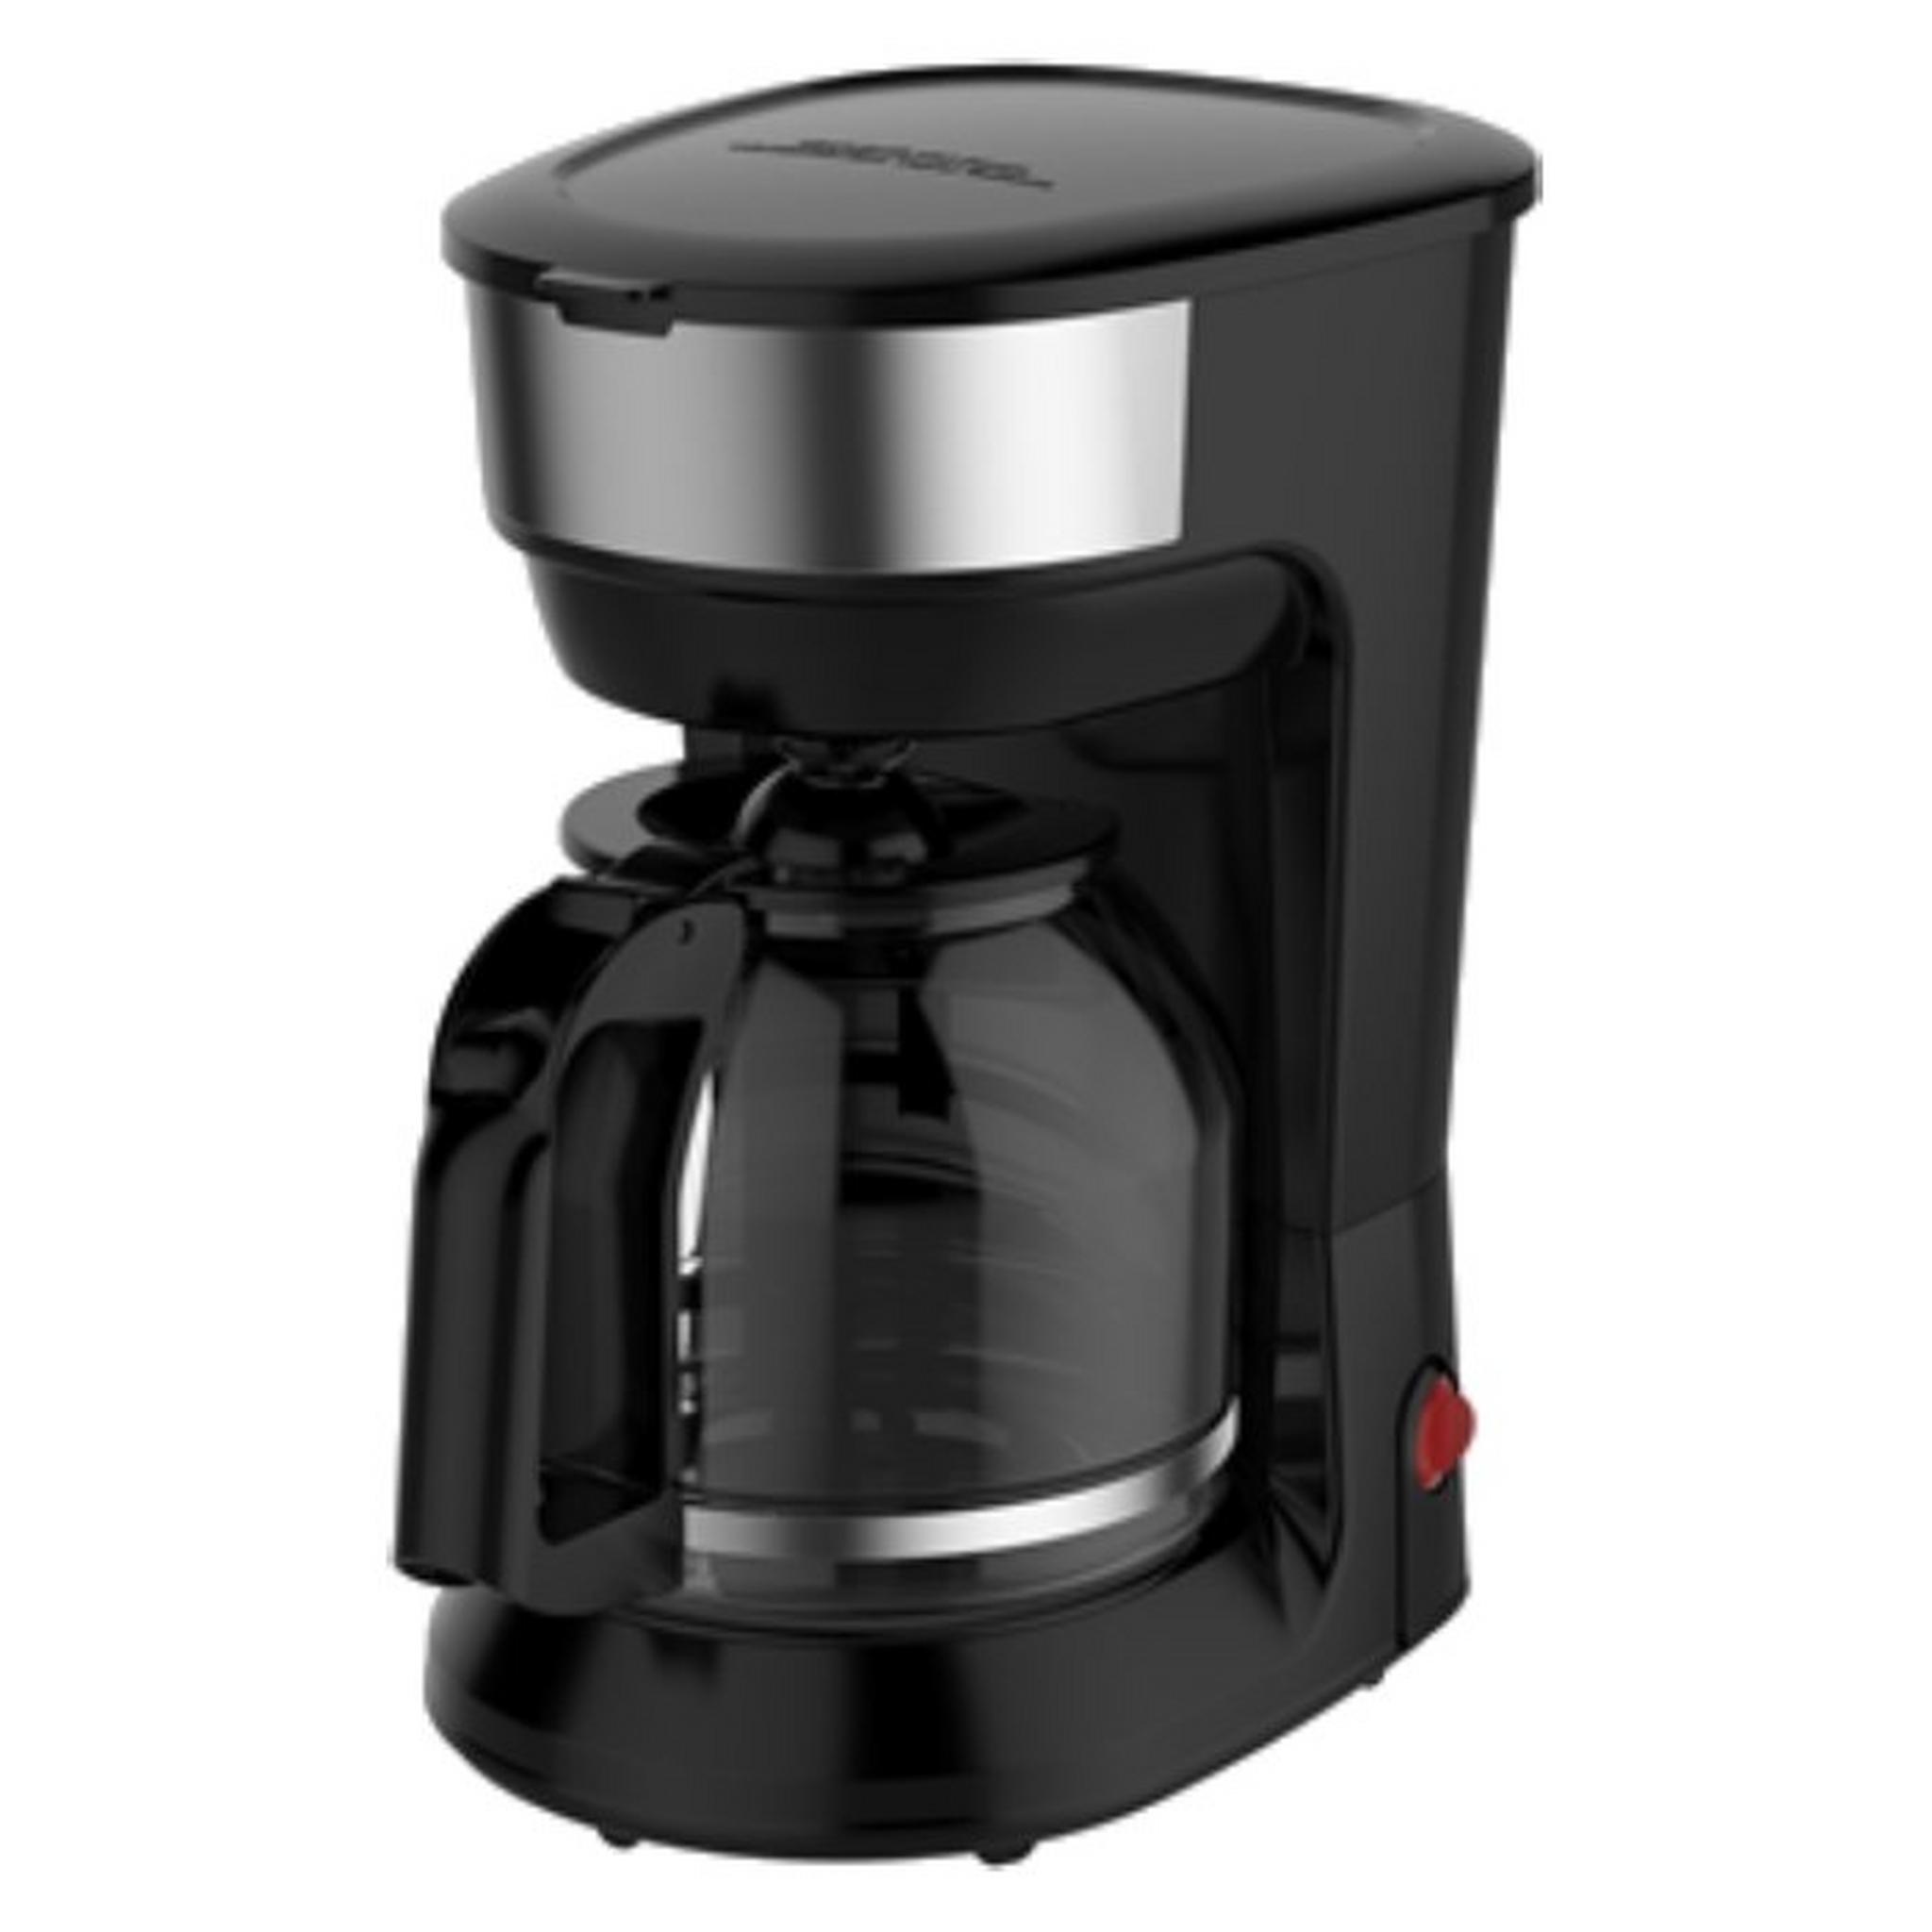 ماكينة صنع القهوة من ونسا، قدرة 900 واط، سعة 1.8 لتر، CM1091A-CB - أسود